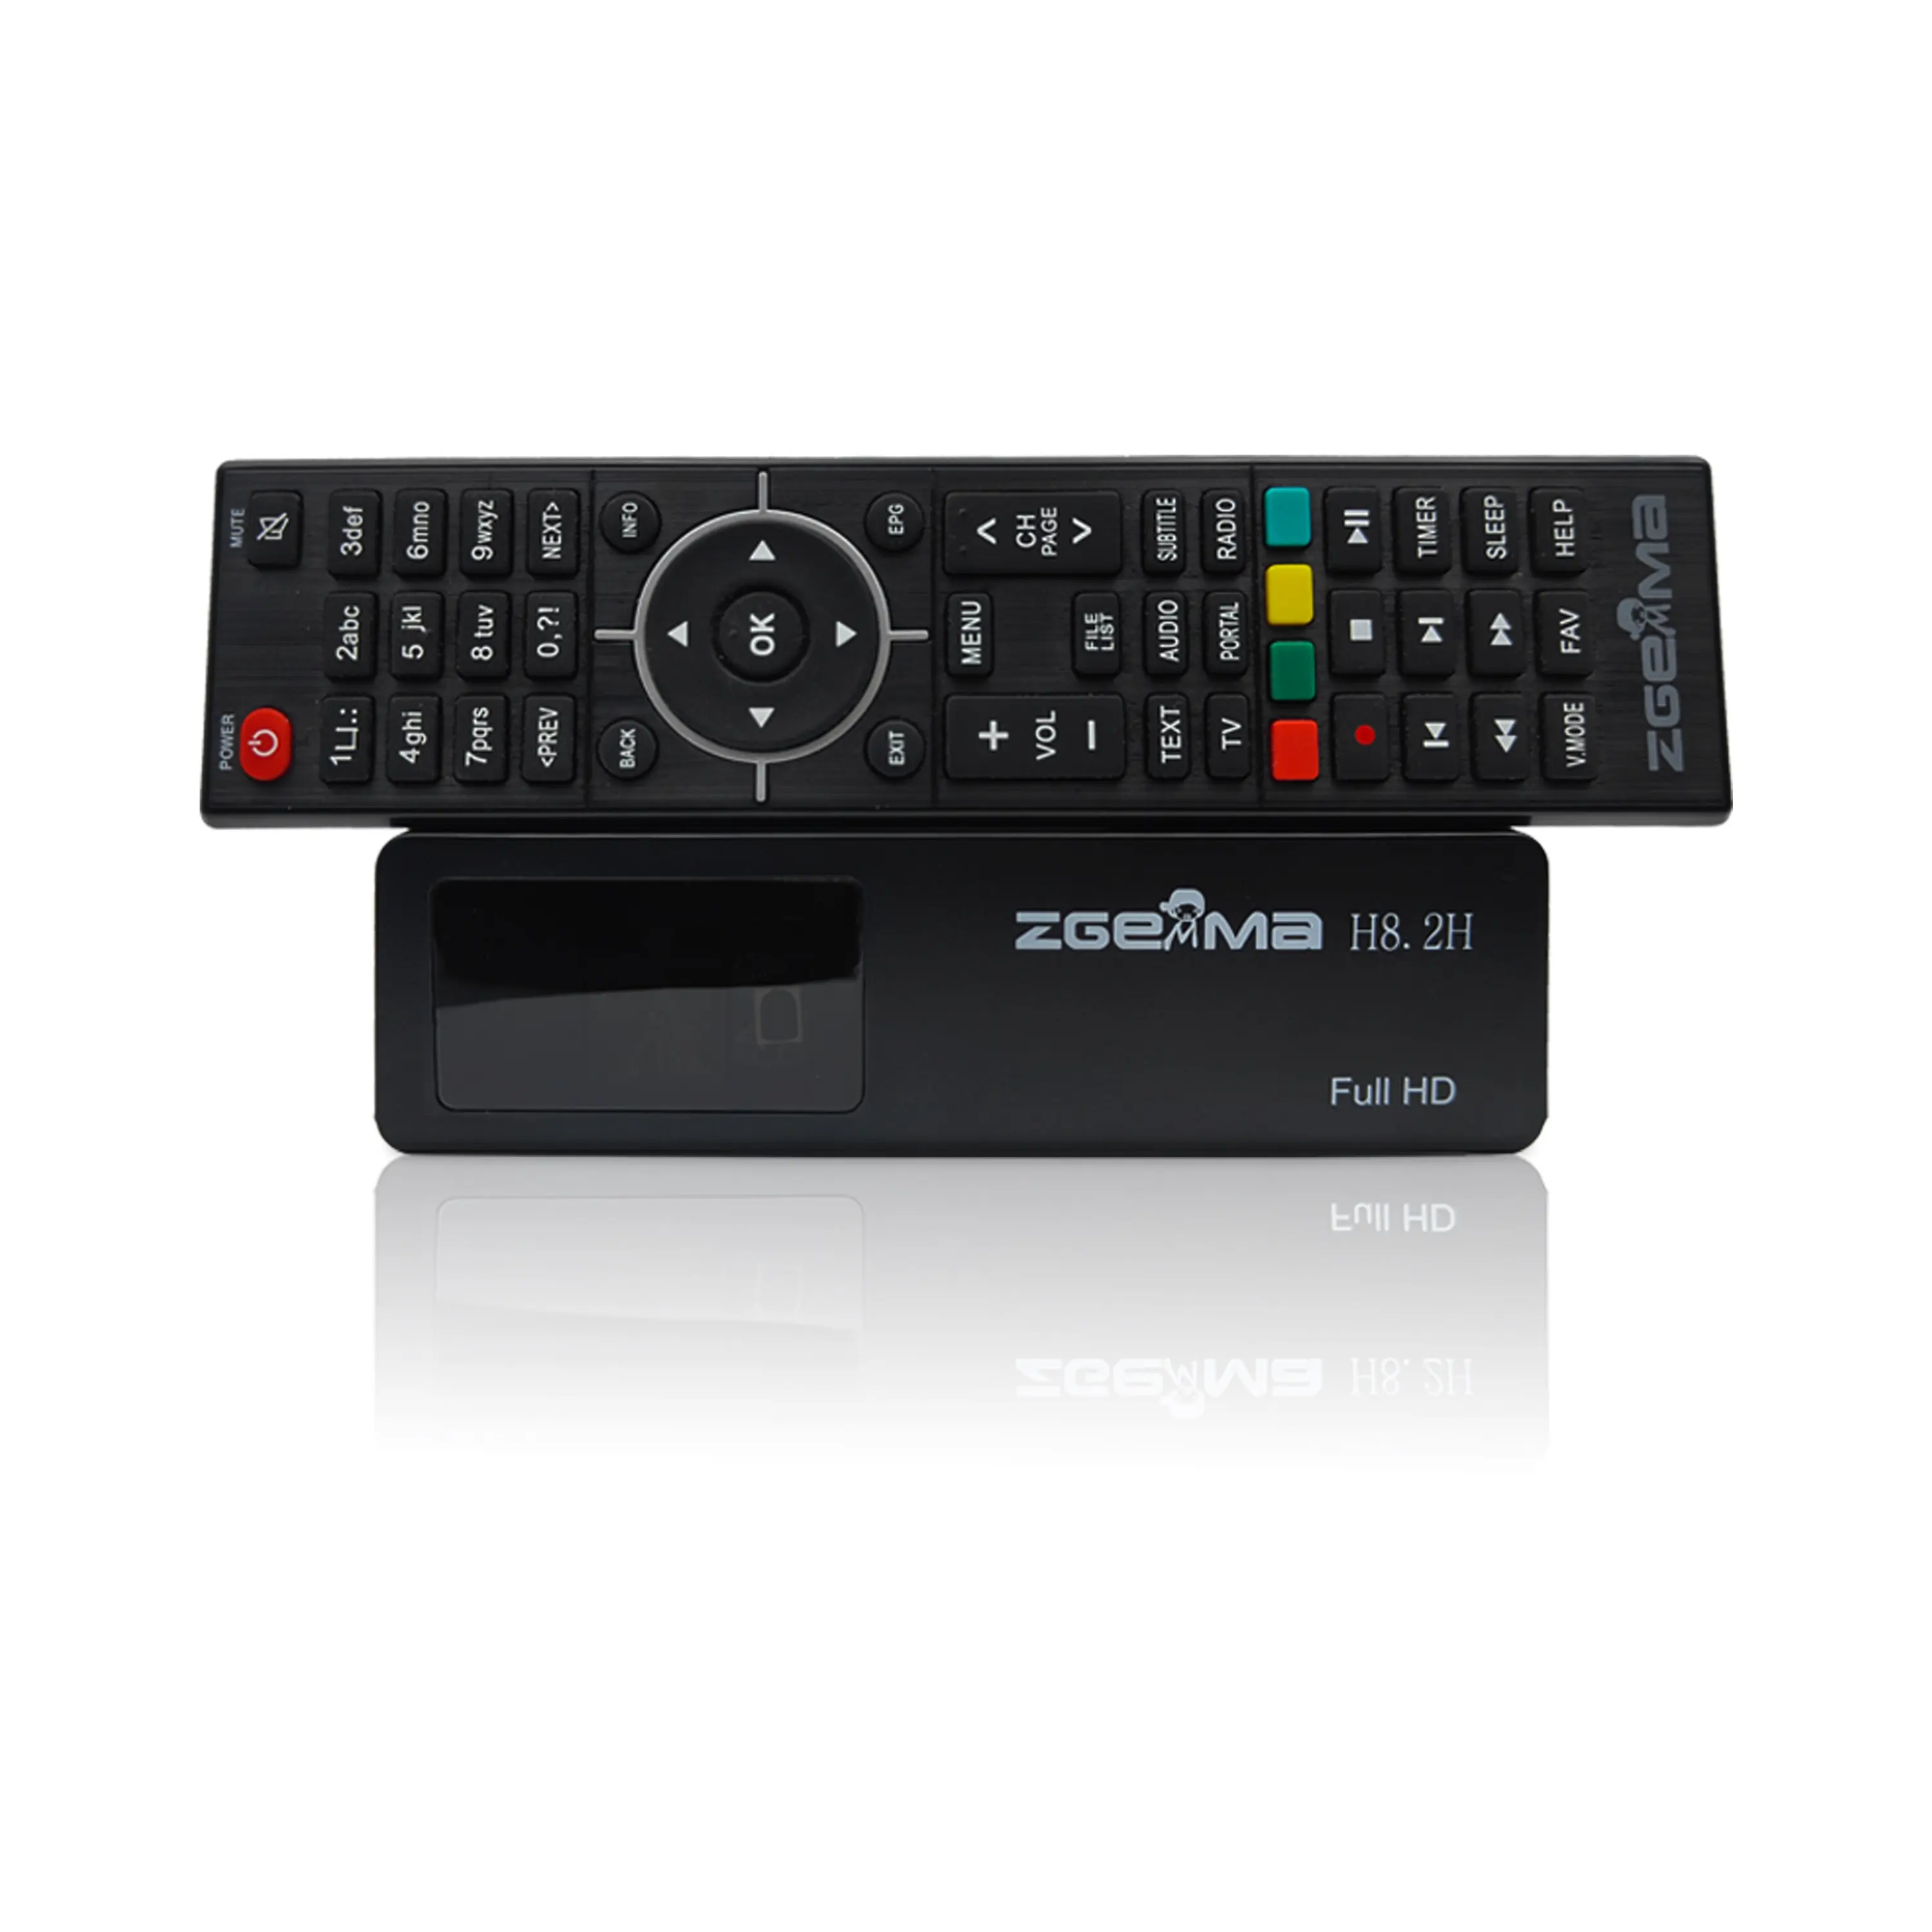 1080p H.265 सैटेलाइट टीवी रिसीवर Enigm2 Linux OS DVB S2X + DVB T2/C कॉम्बो ट्यूनर आईपीटीवी बॉक्स और टीवी डिकोडर ZGEMMA H8.2H